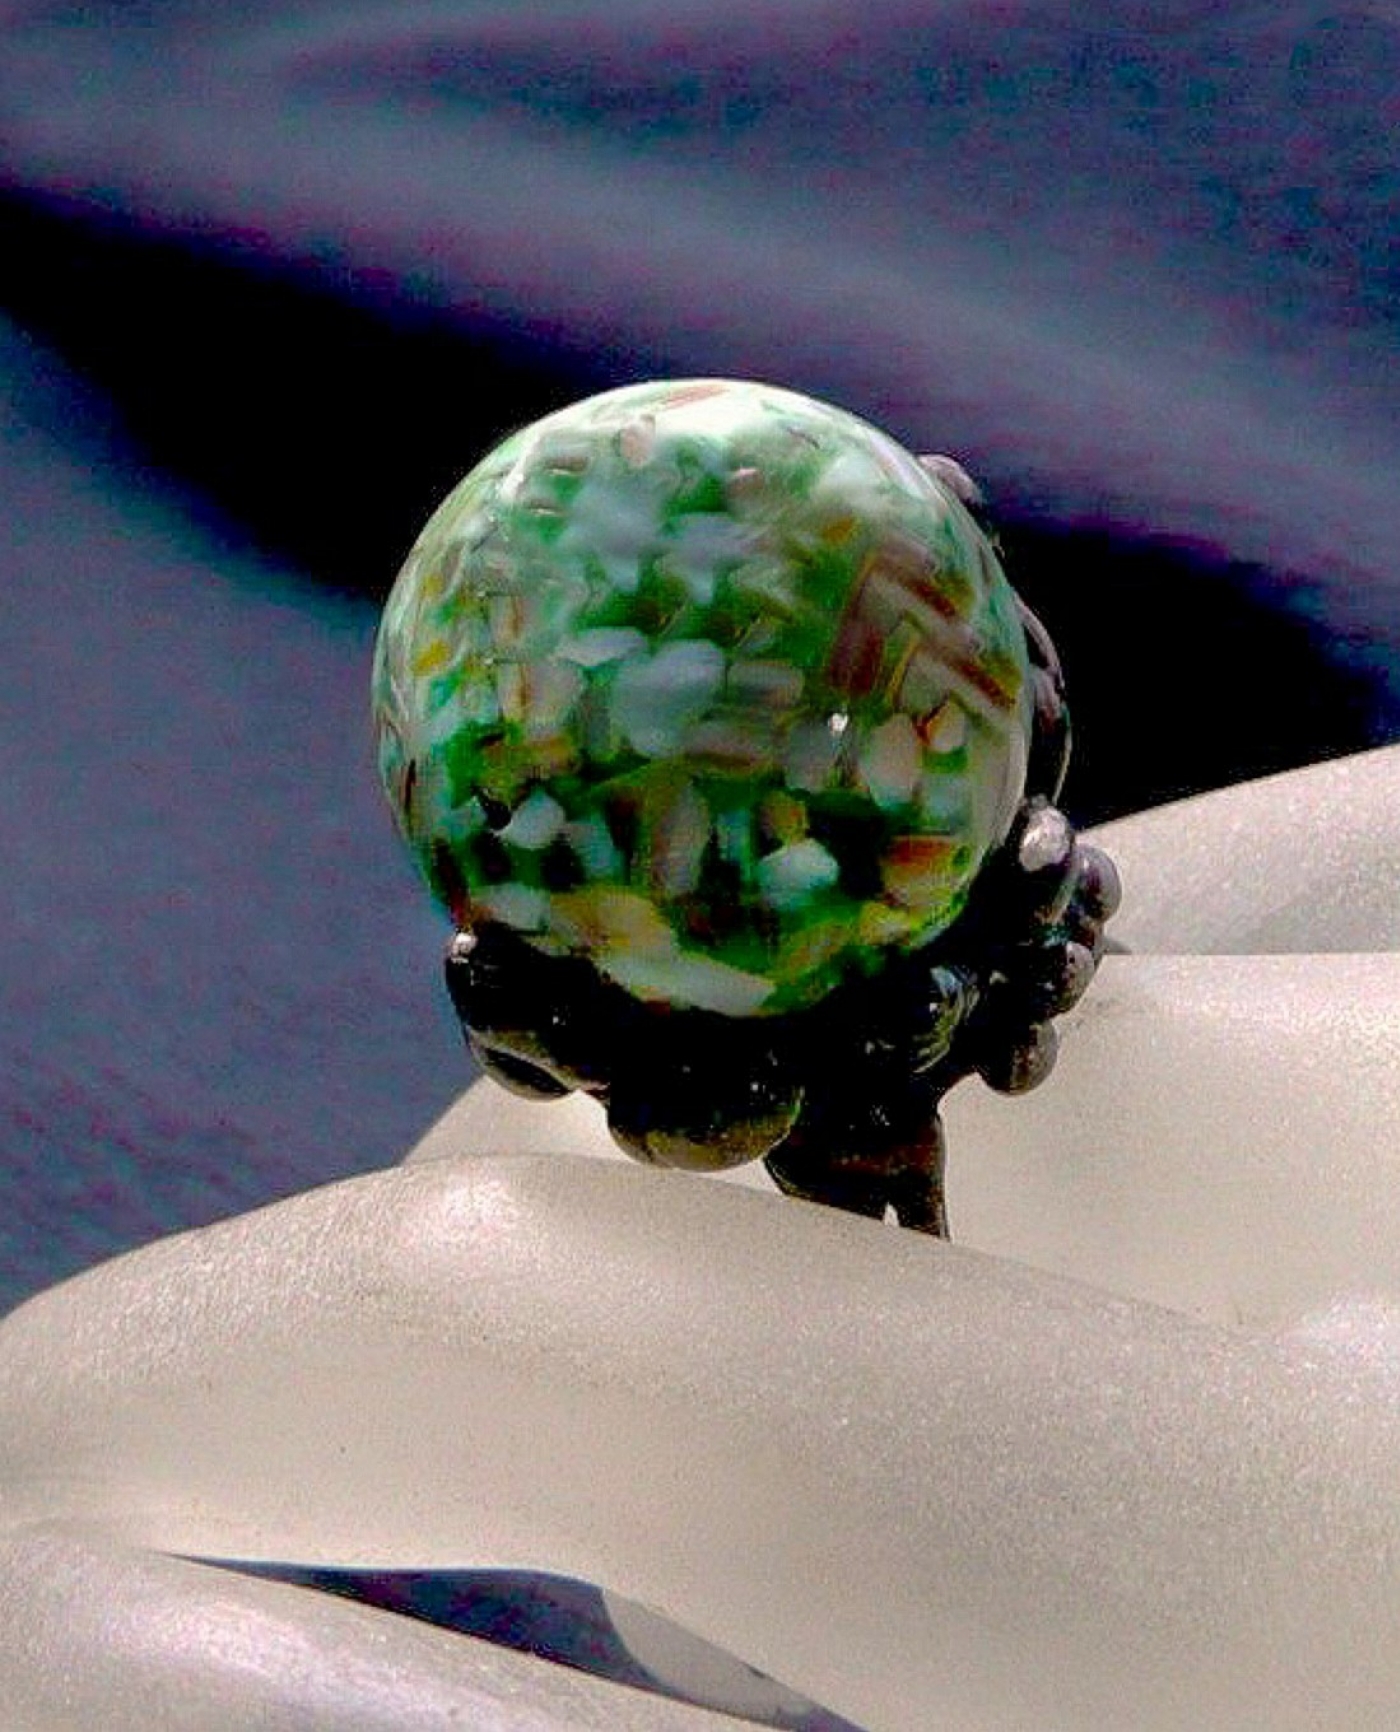 autorski pierścień z zielonych muszli unikatowo i ekologicznie oprawiona w technice Tiffany